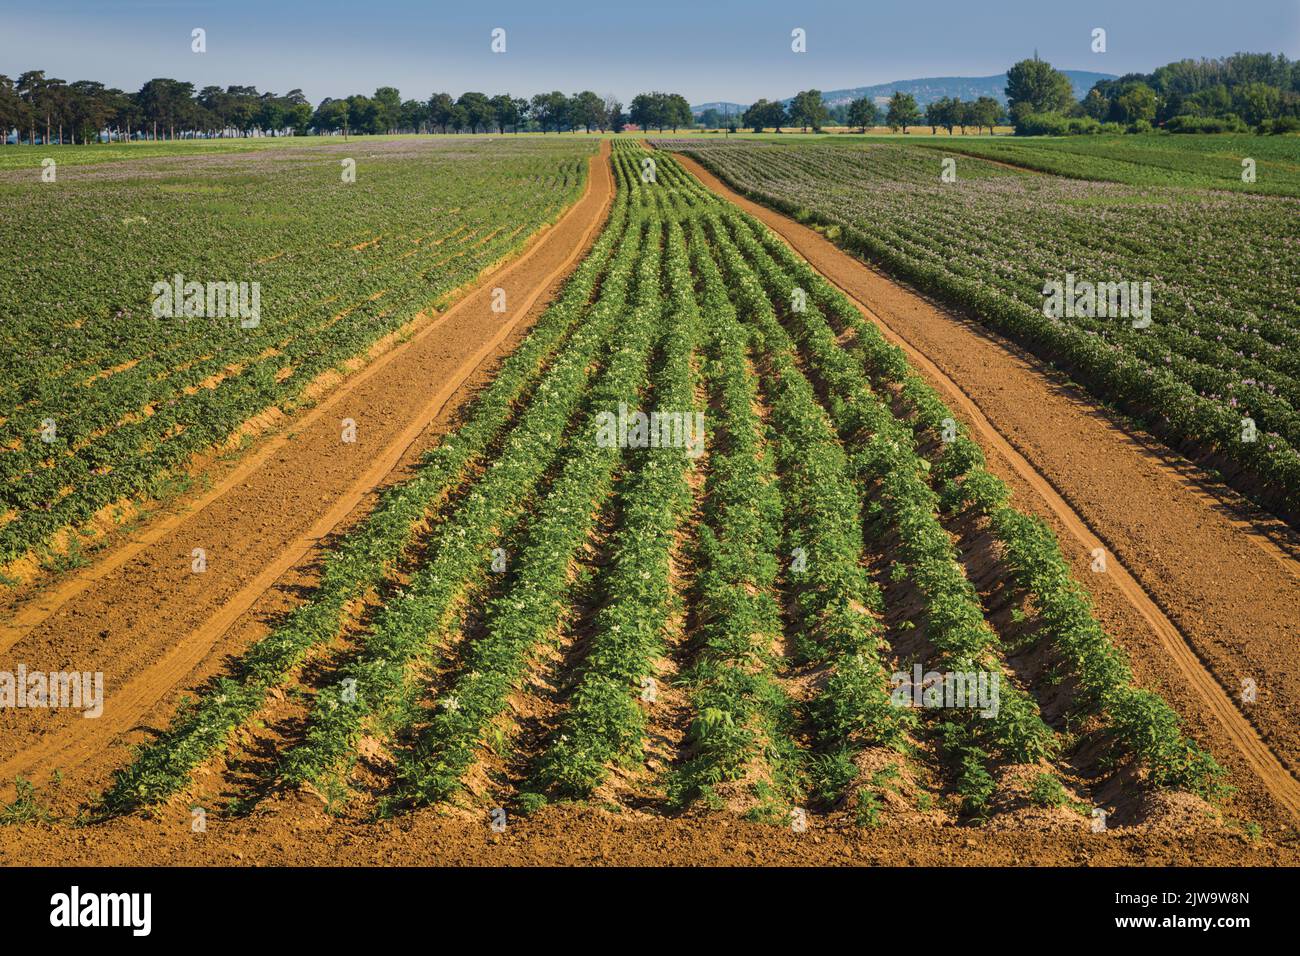 Field of crops under cultivation near Keszthely, Zala County, Hungary. Stock Photo